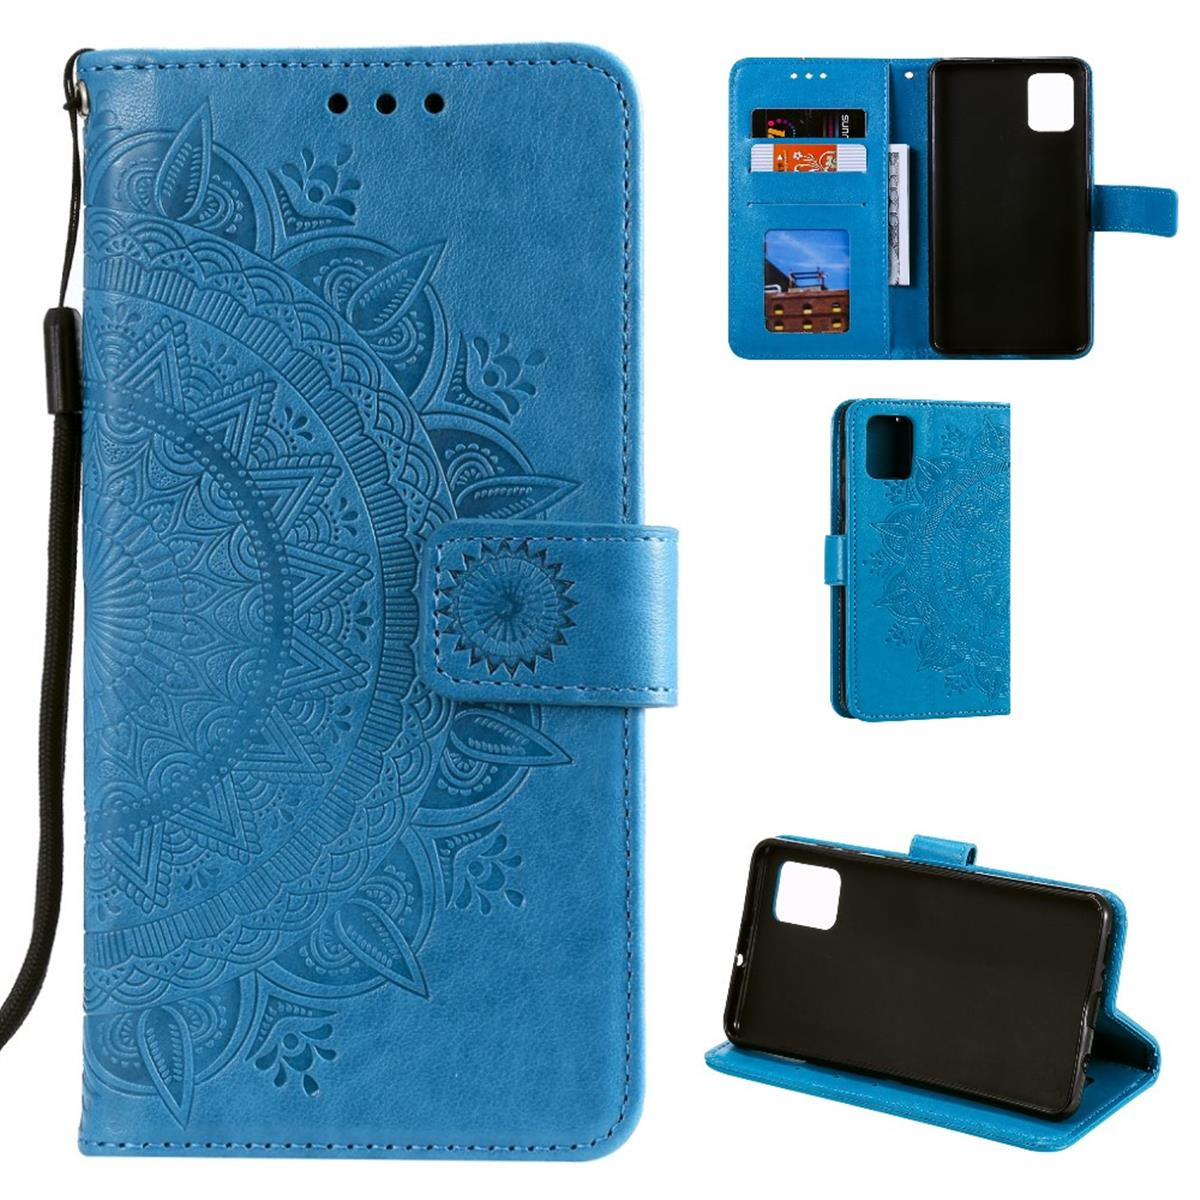 Note COVERKINGZ Mandala Xiaomi, 10 Klapphülle Bookcover, M3 Muster, Blau 5G/Poco Pro, Redmi mit